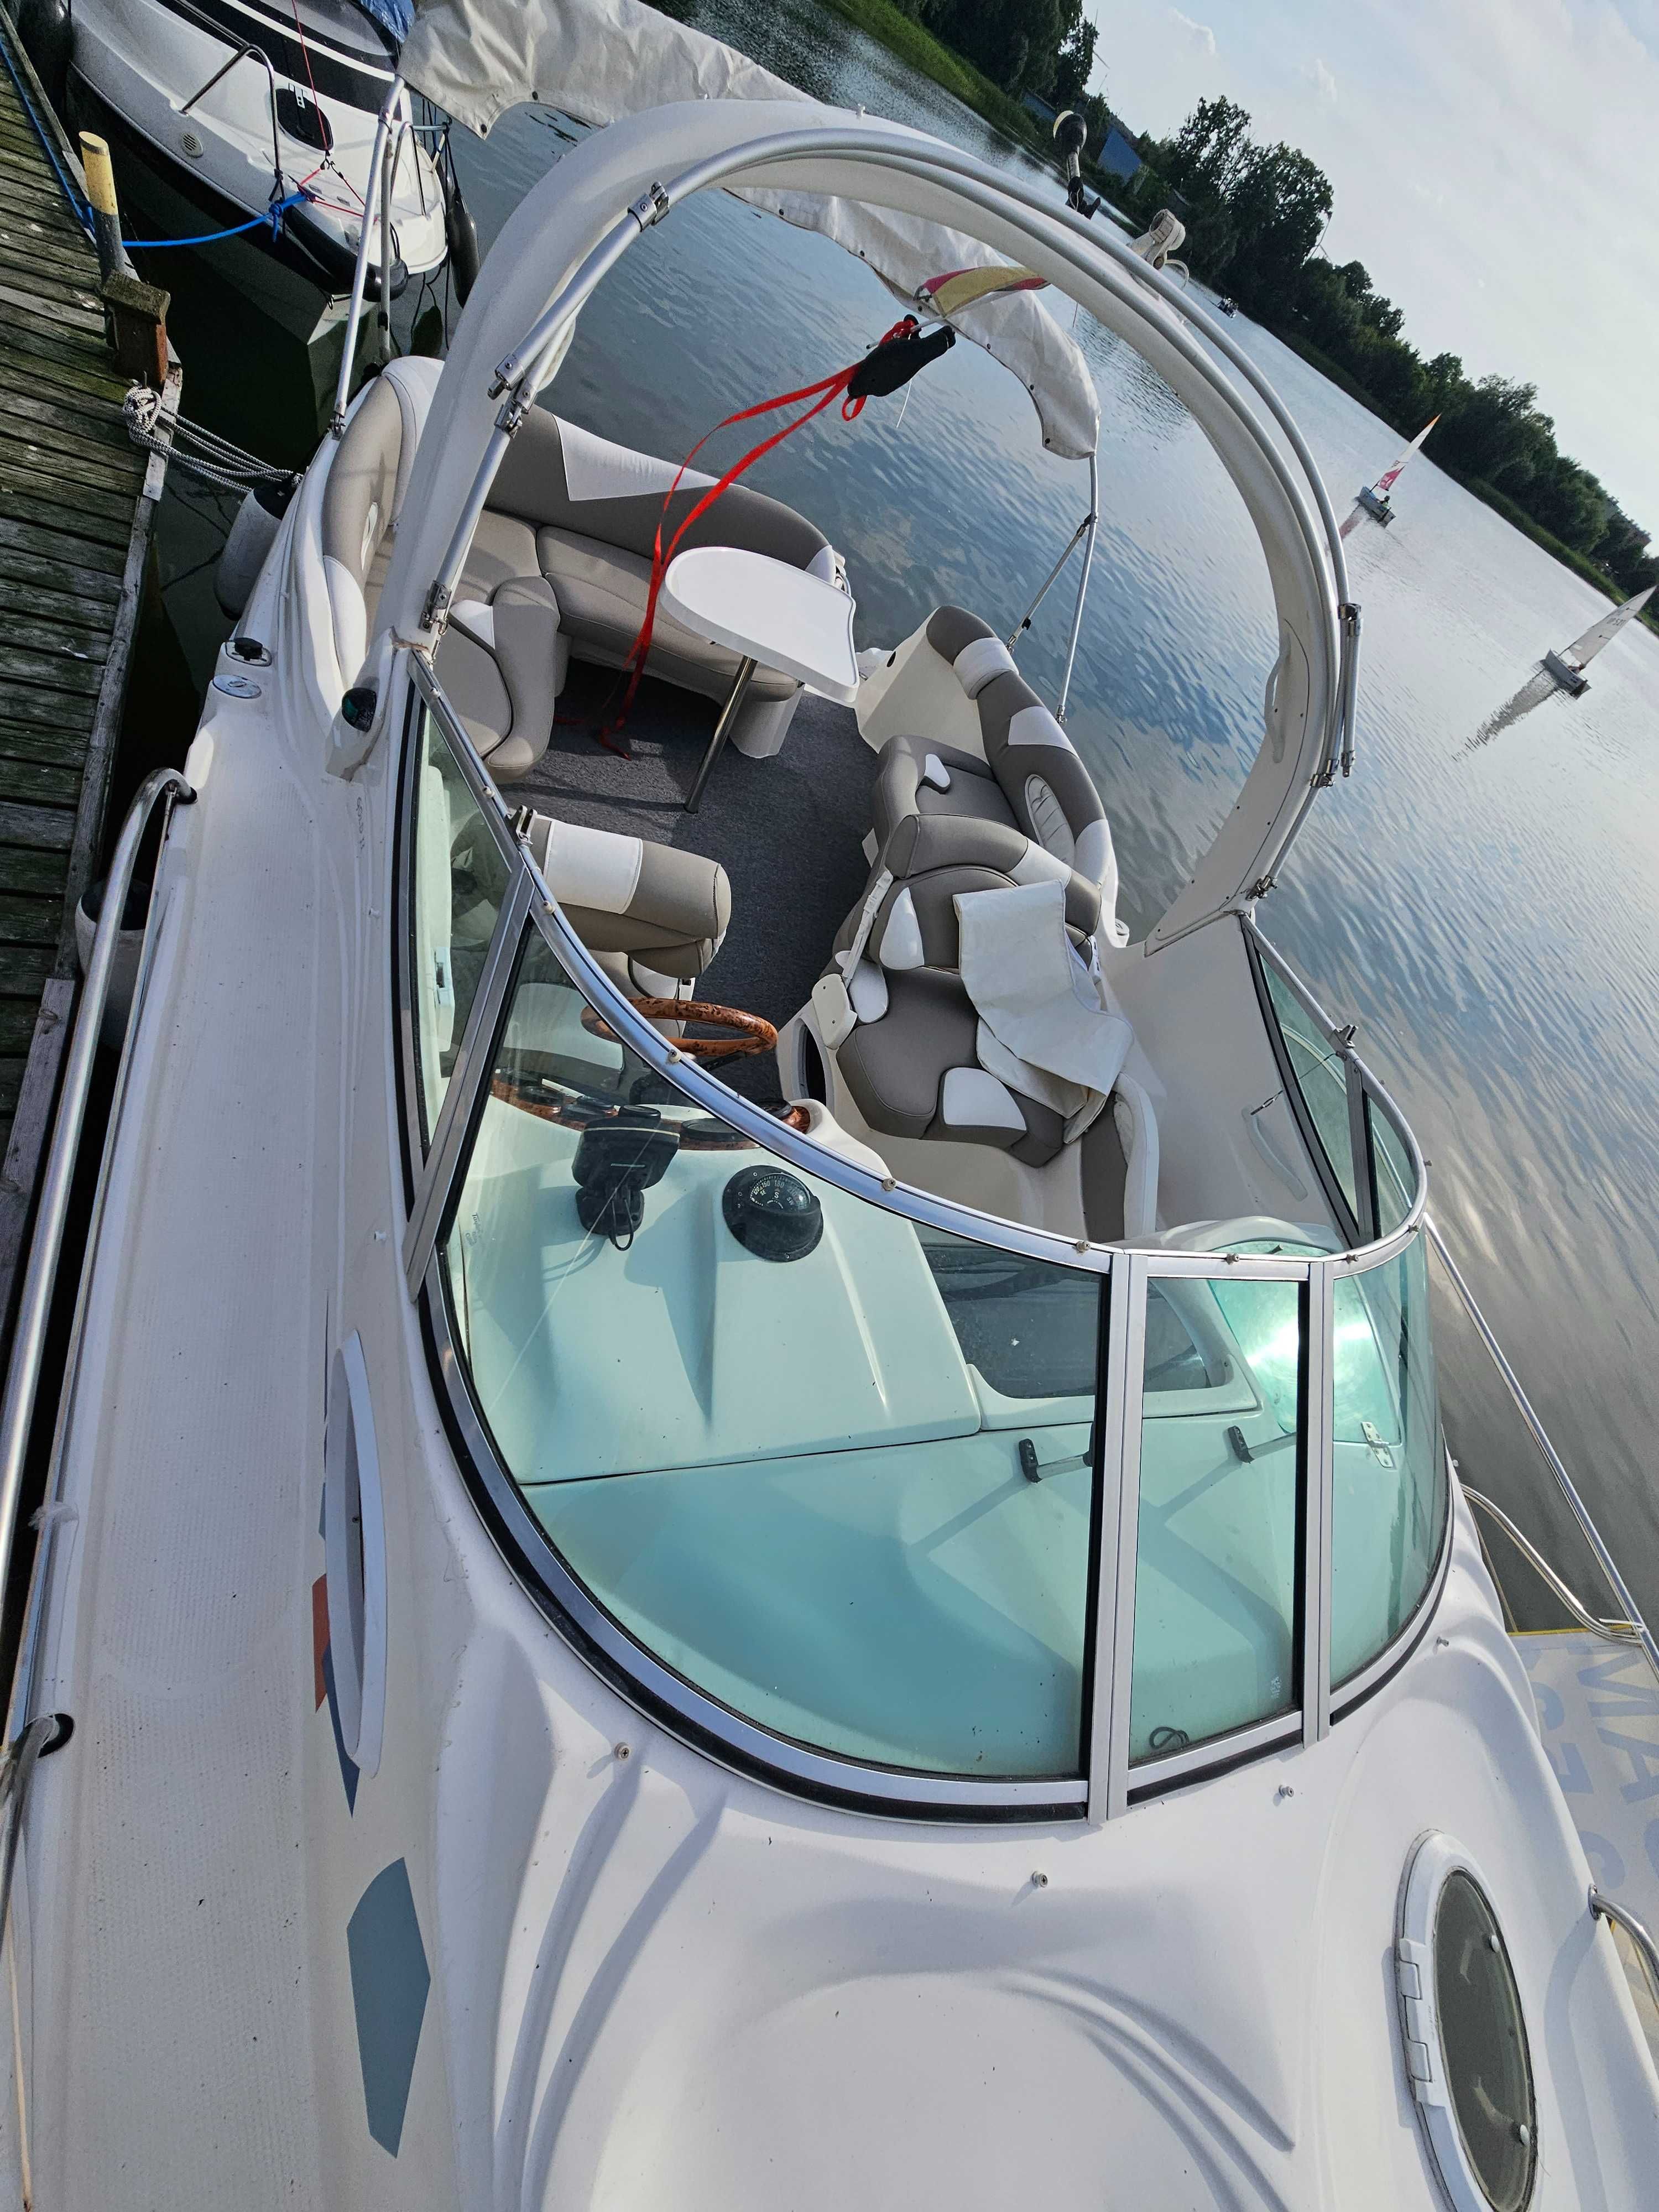 Jacht motorowy łódż kajutowa Lema Gold 2 volvo penta 4,3 v6  przyczepa